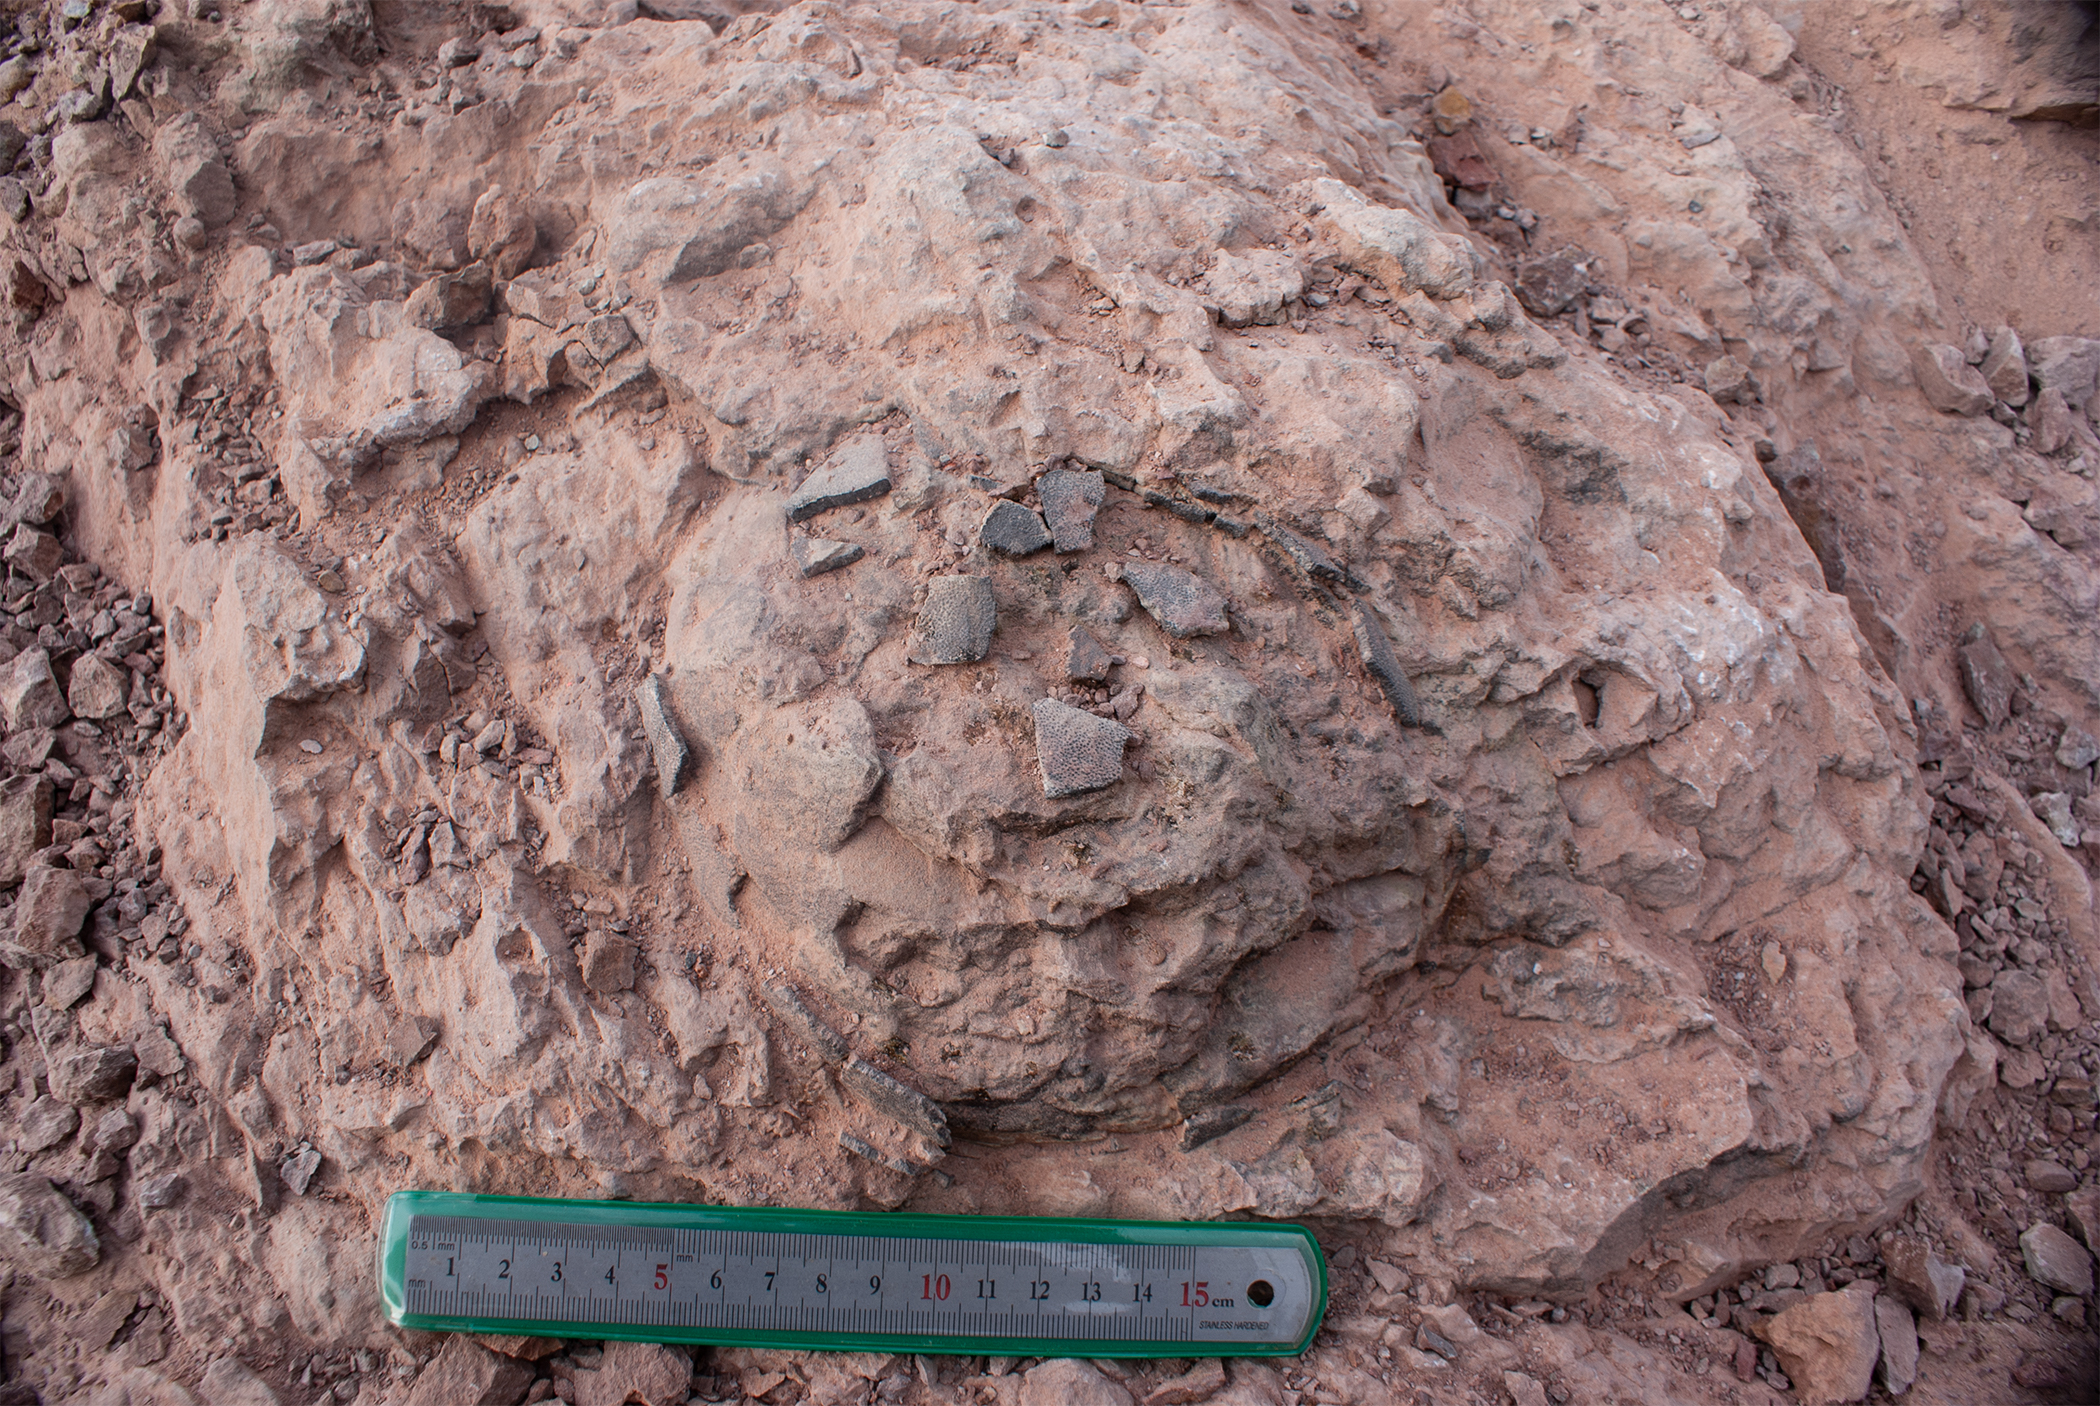 Paleontólogos extraen 30 huevos de titanosaurio conservados de un nido de dinosaurio fosilizado de 2 toneladas en el norte de España